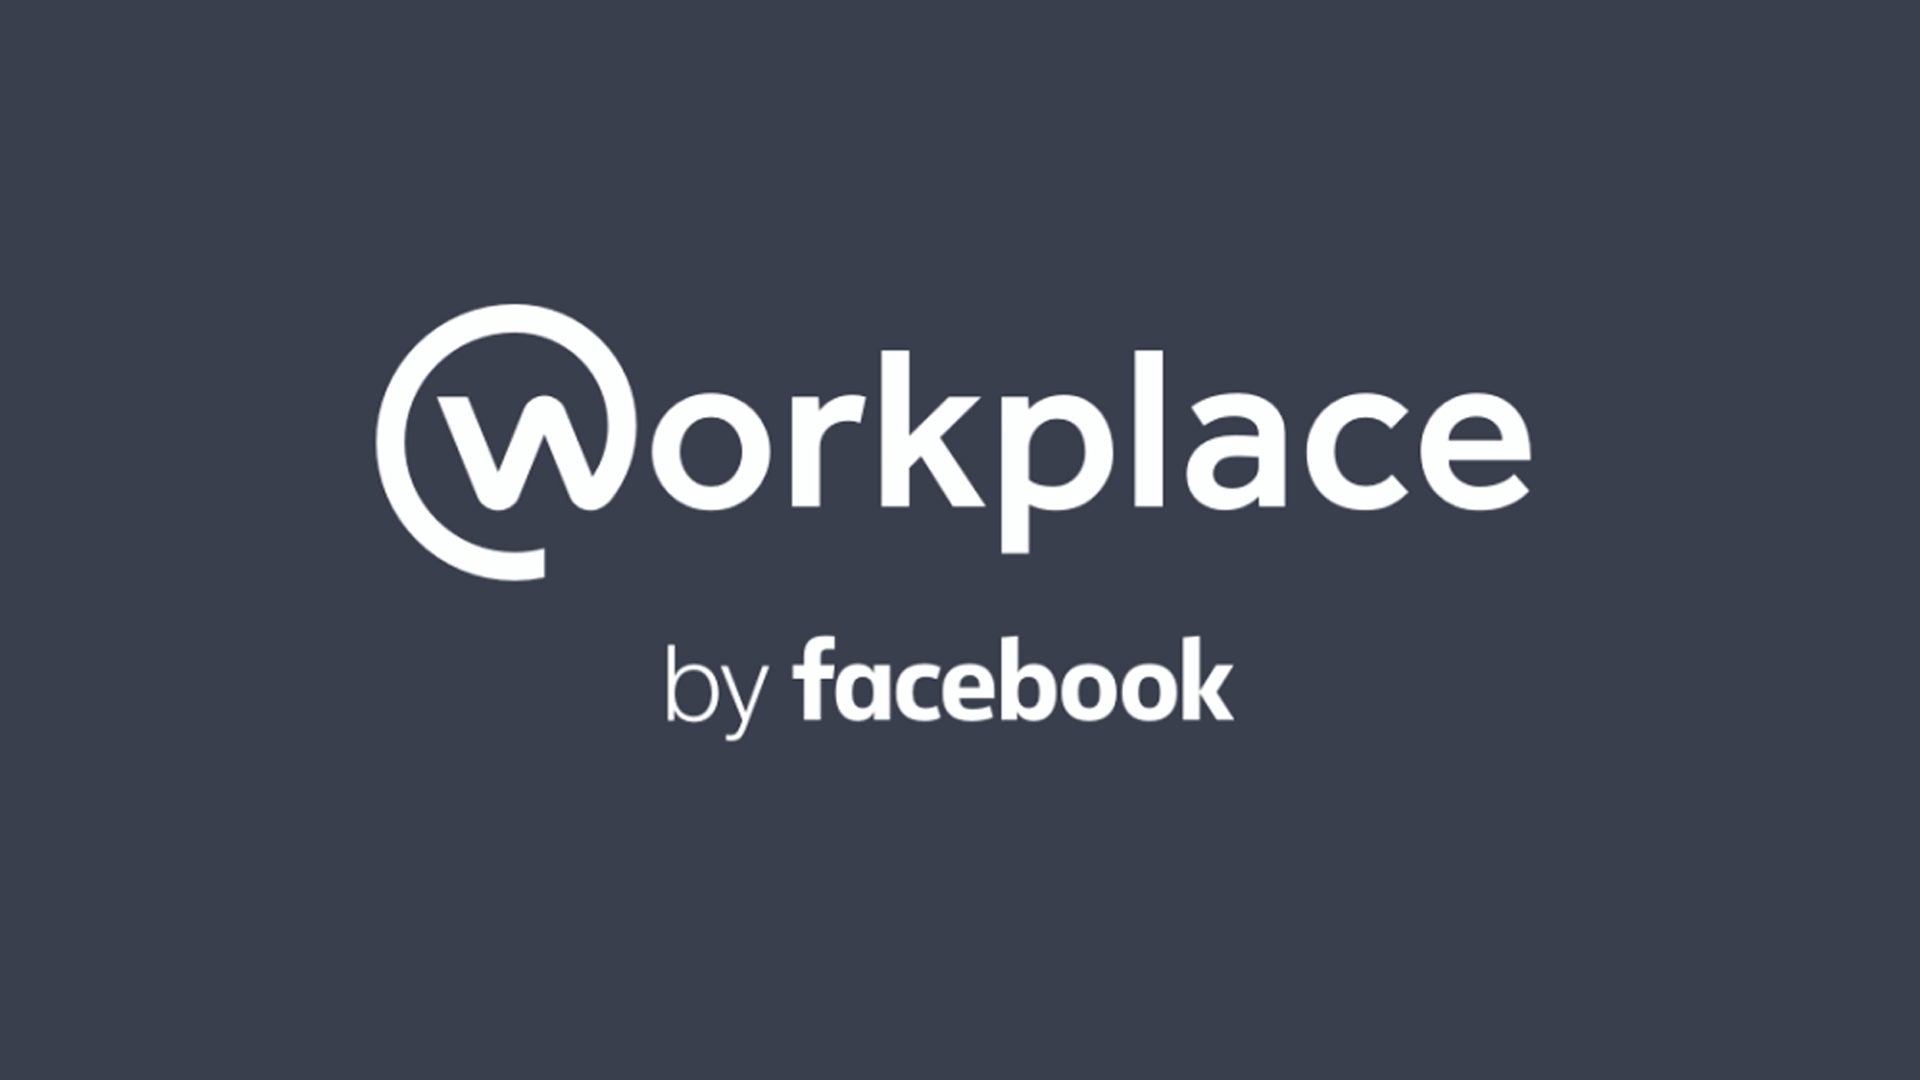 Workplace Facebook là gì và nó khác Facebook thông thường như thế nào?